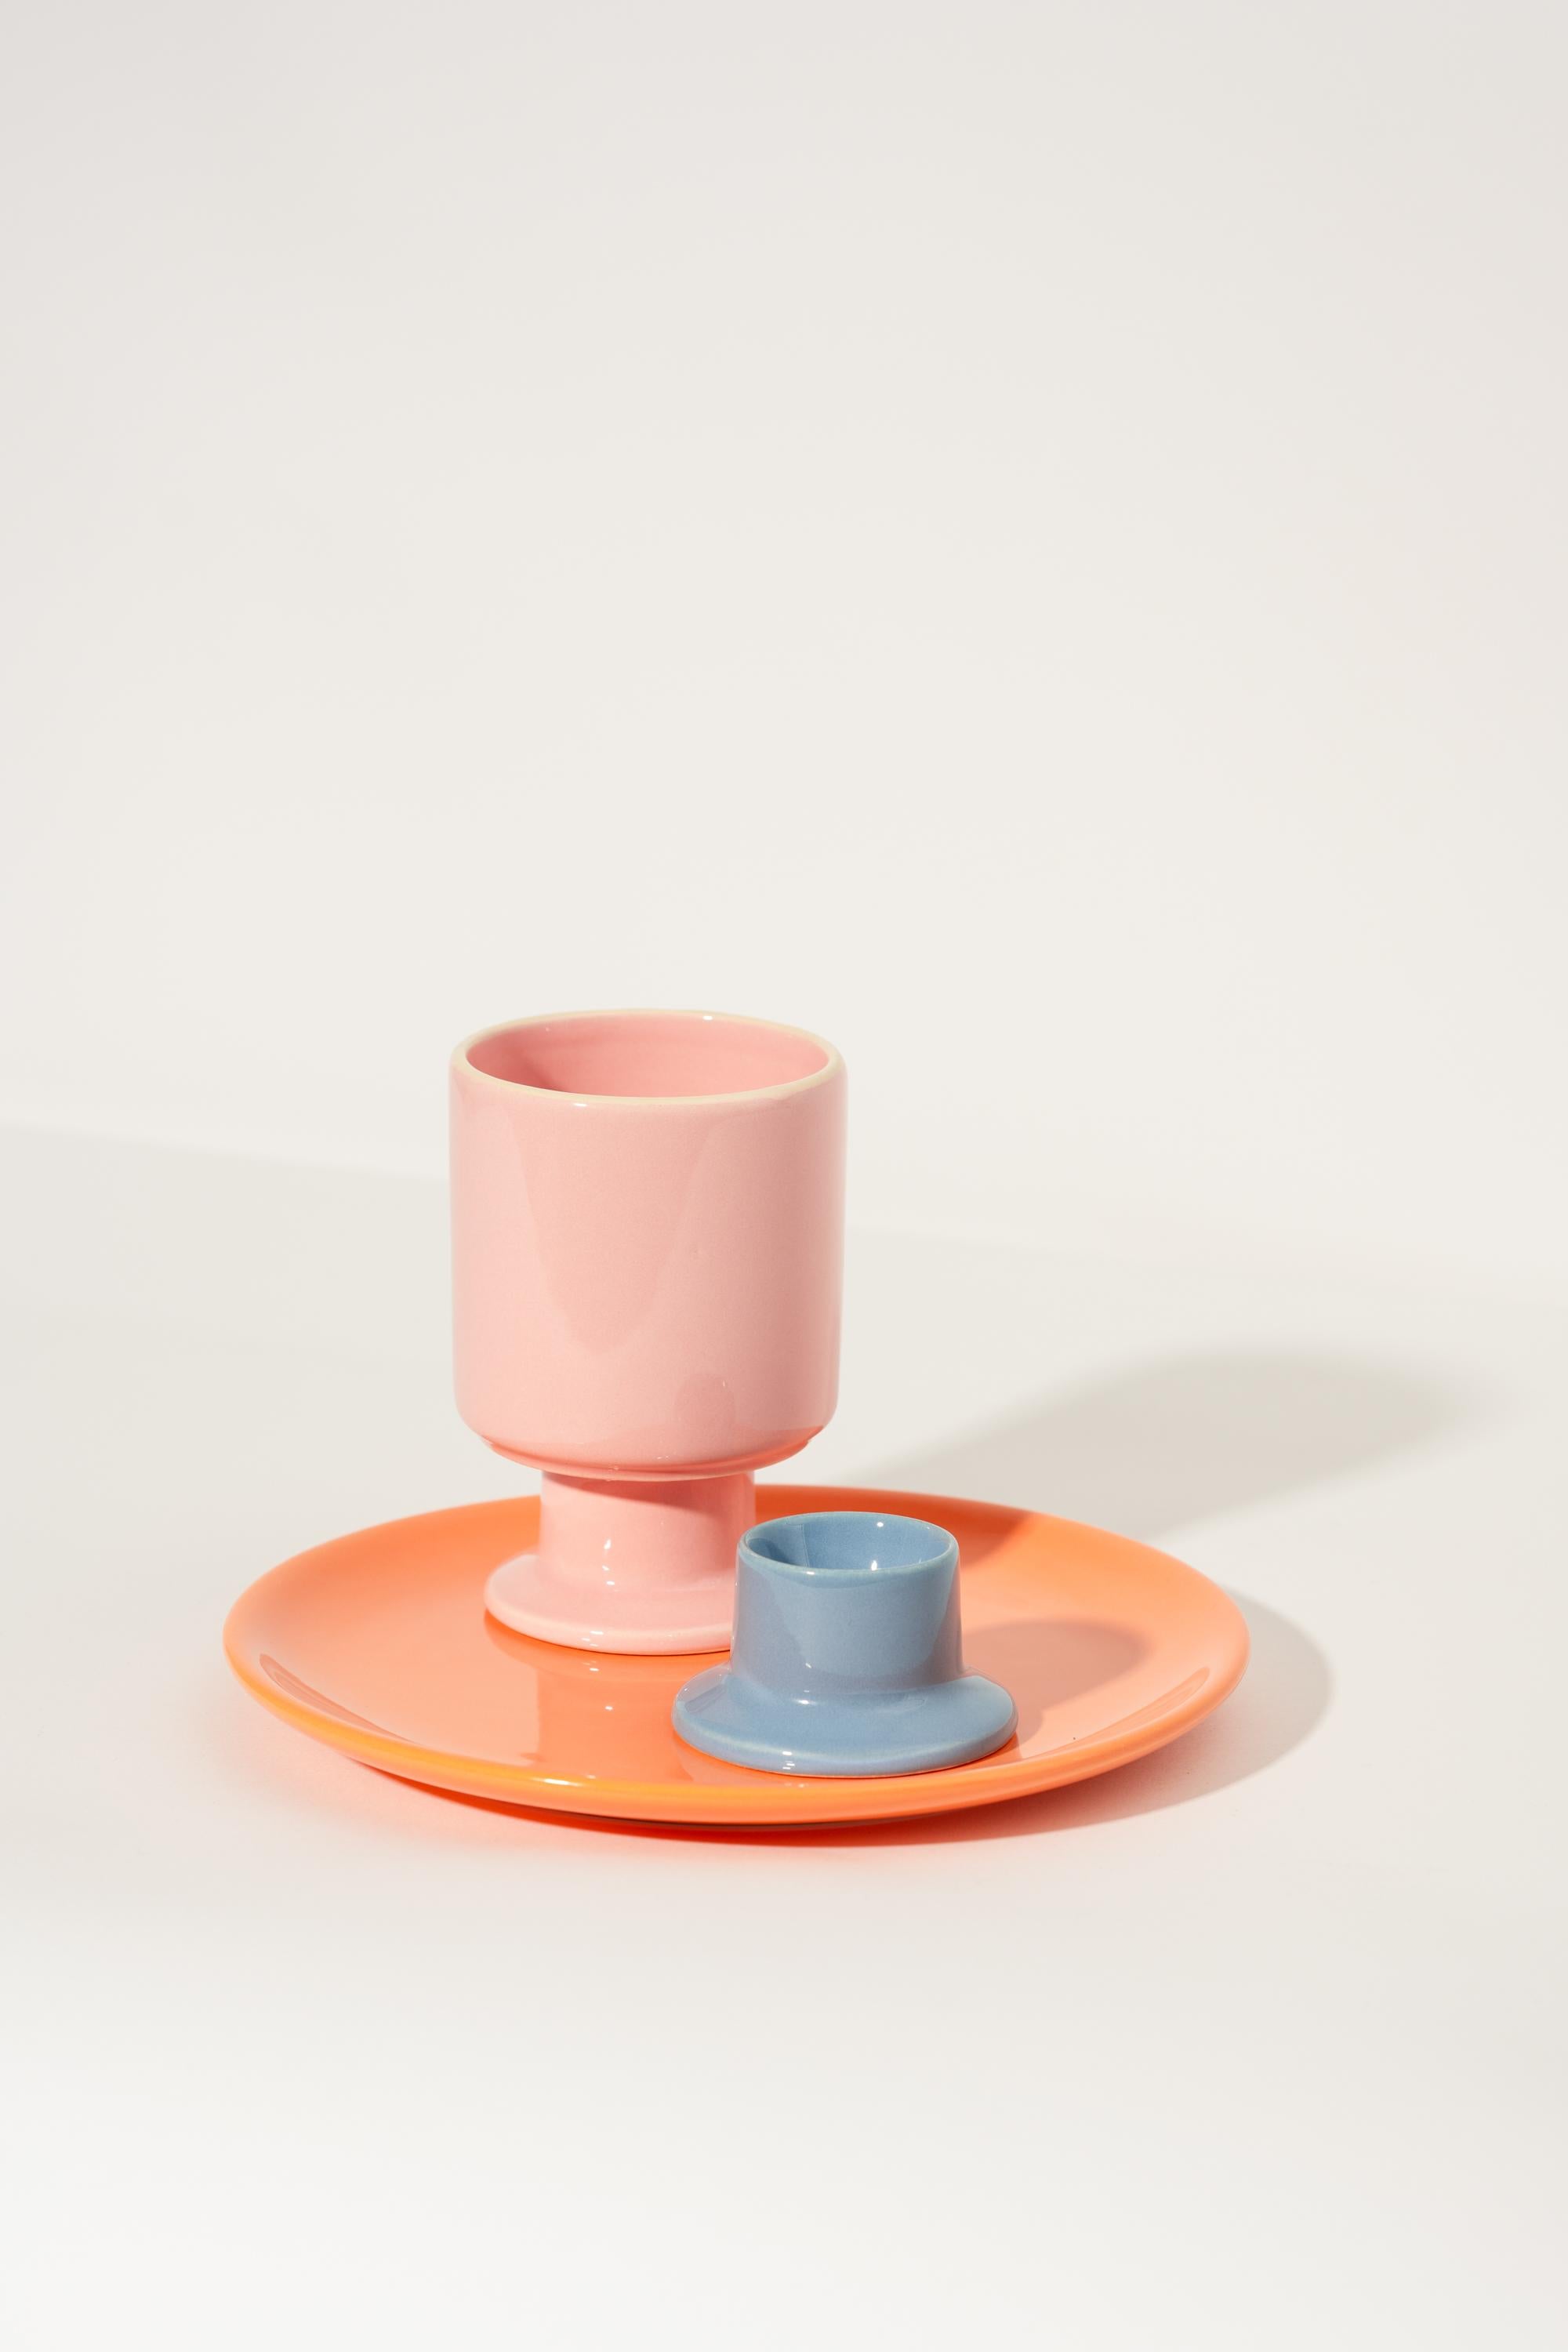 Set parfait pour le petit déjeuner ; assiette orange, tasse WIT rose bonbon et porte-œufs bleu denim JULA par Malwina Konopacka. 

Un set de petit-déjeuner est le compagnon idéal pour tous les matins. Les couleurs et les formes originales des objets